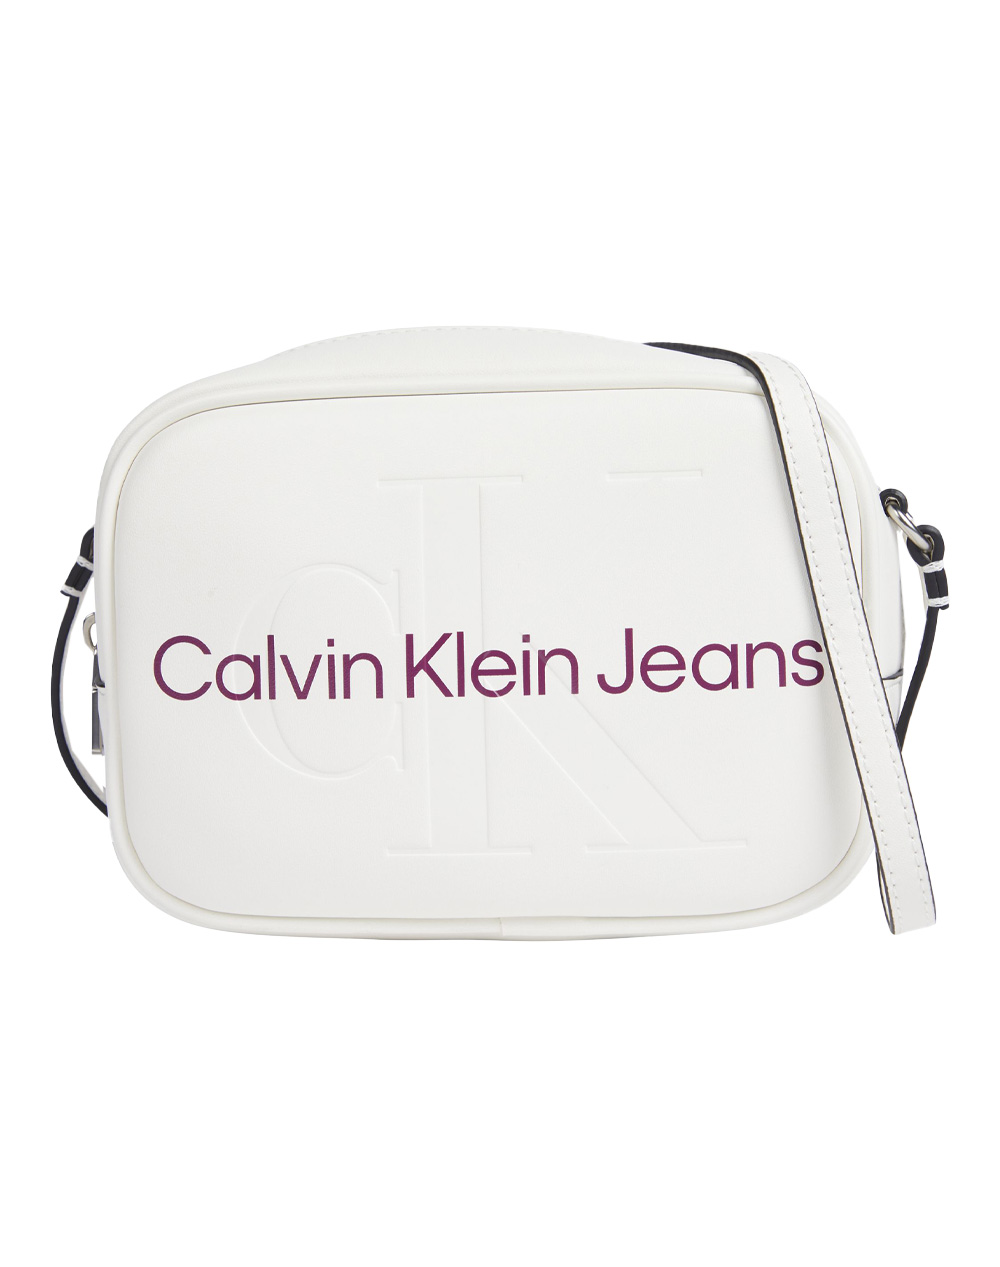 Calvin klein Camera Bag Black